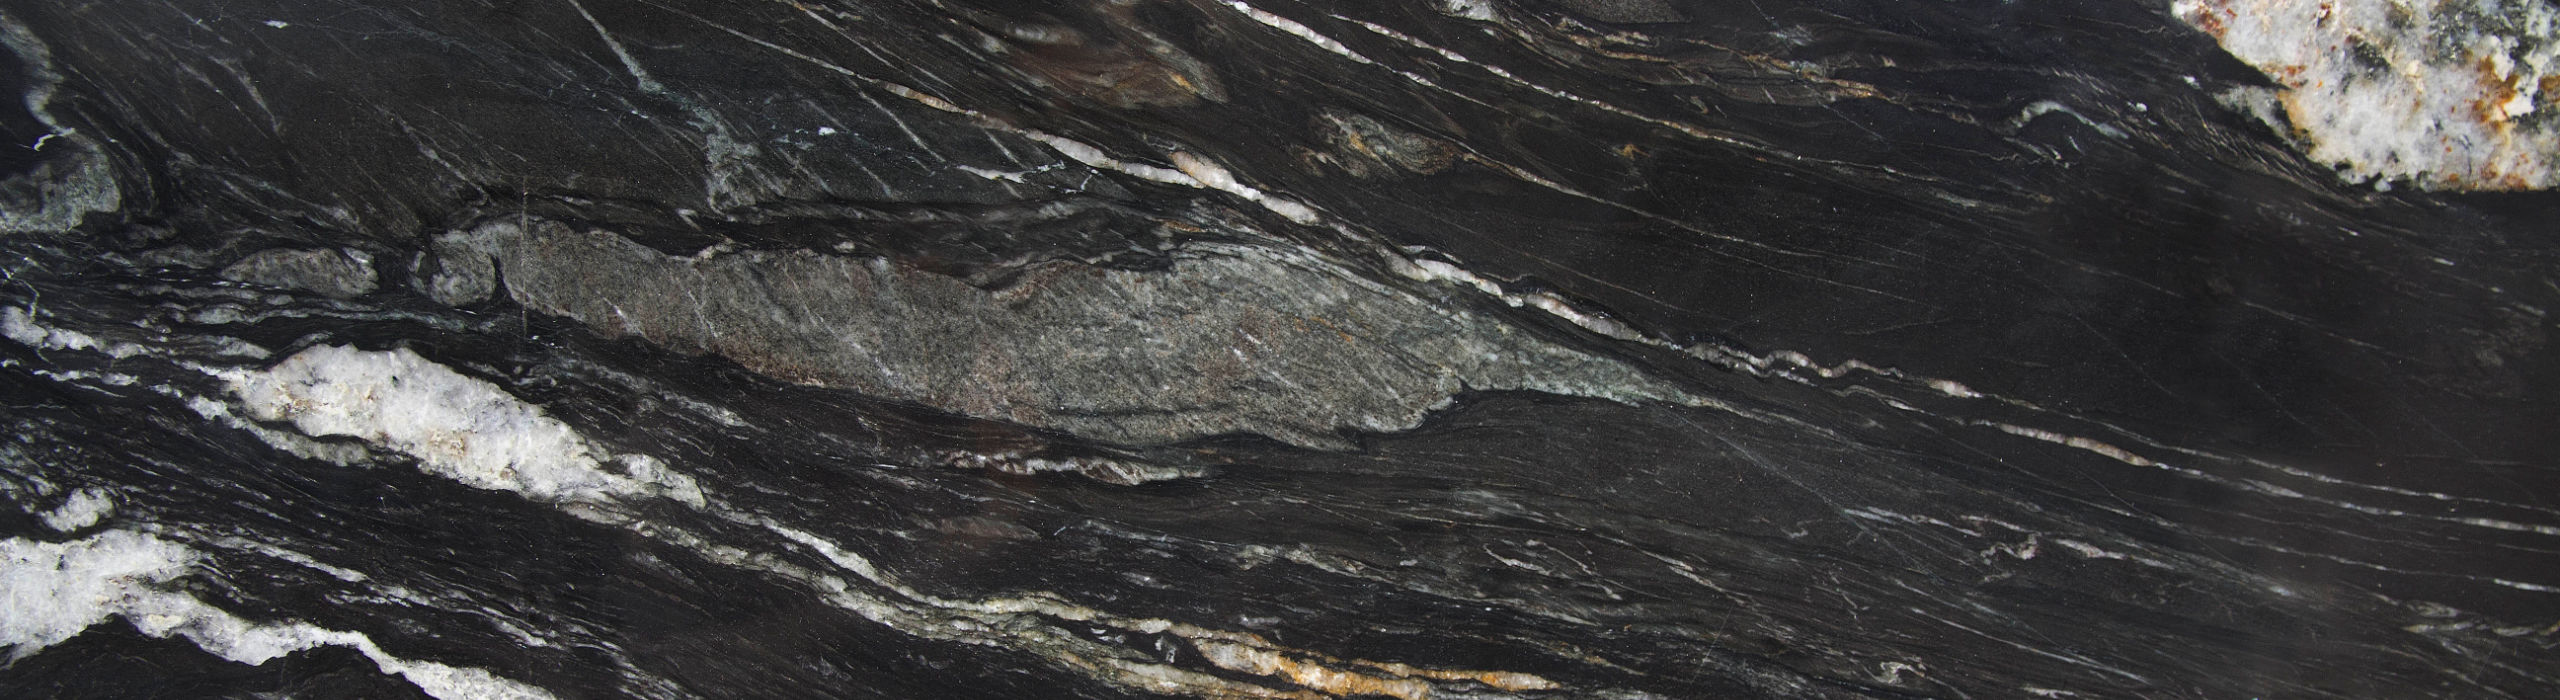 Der Naturstein Belveder ist einer der  Natursteine, die wir bei AS Natursteinwerk für Fliesen, Küchenarbeitsplatten und mehr verwenden